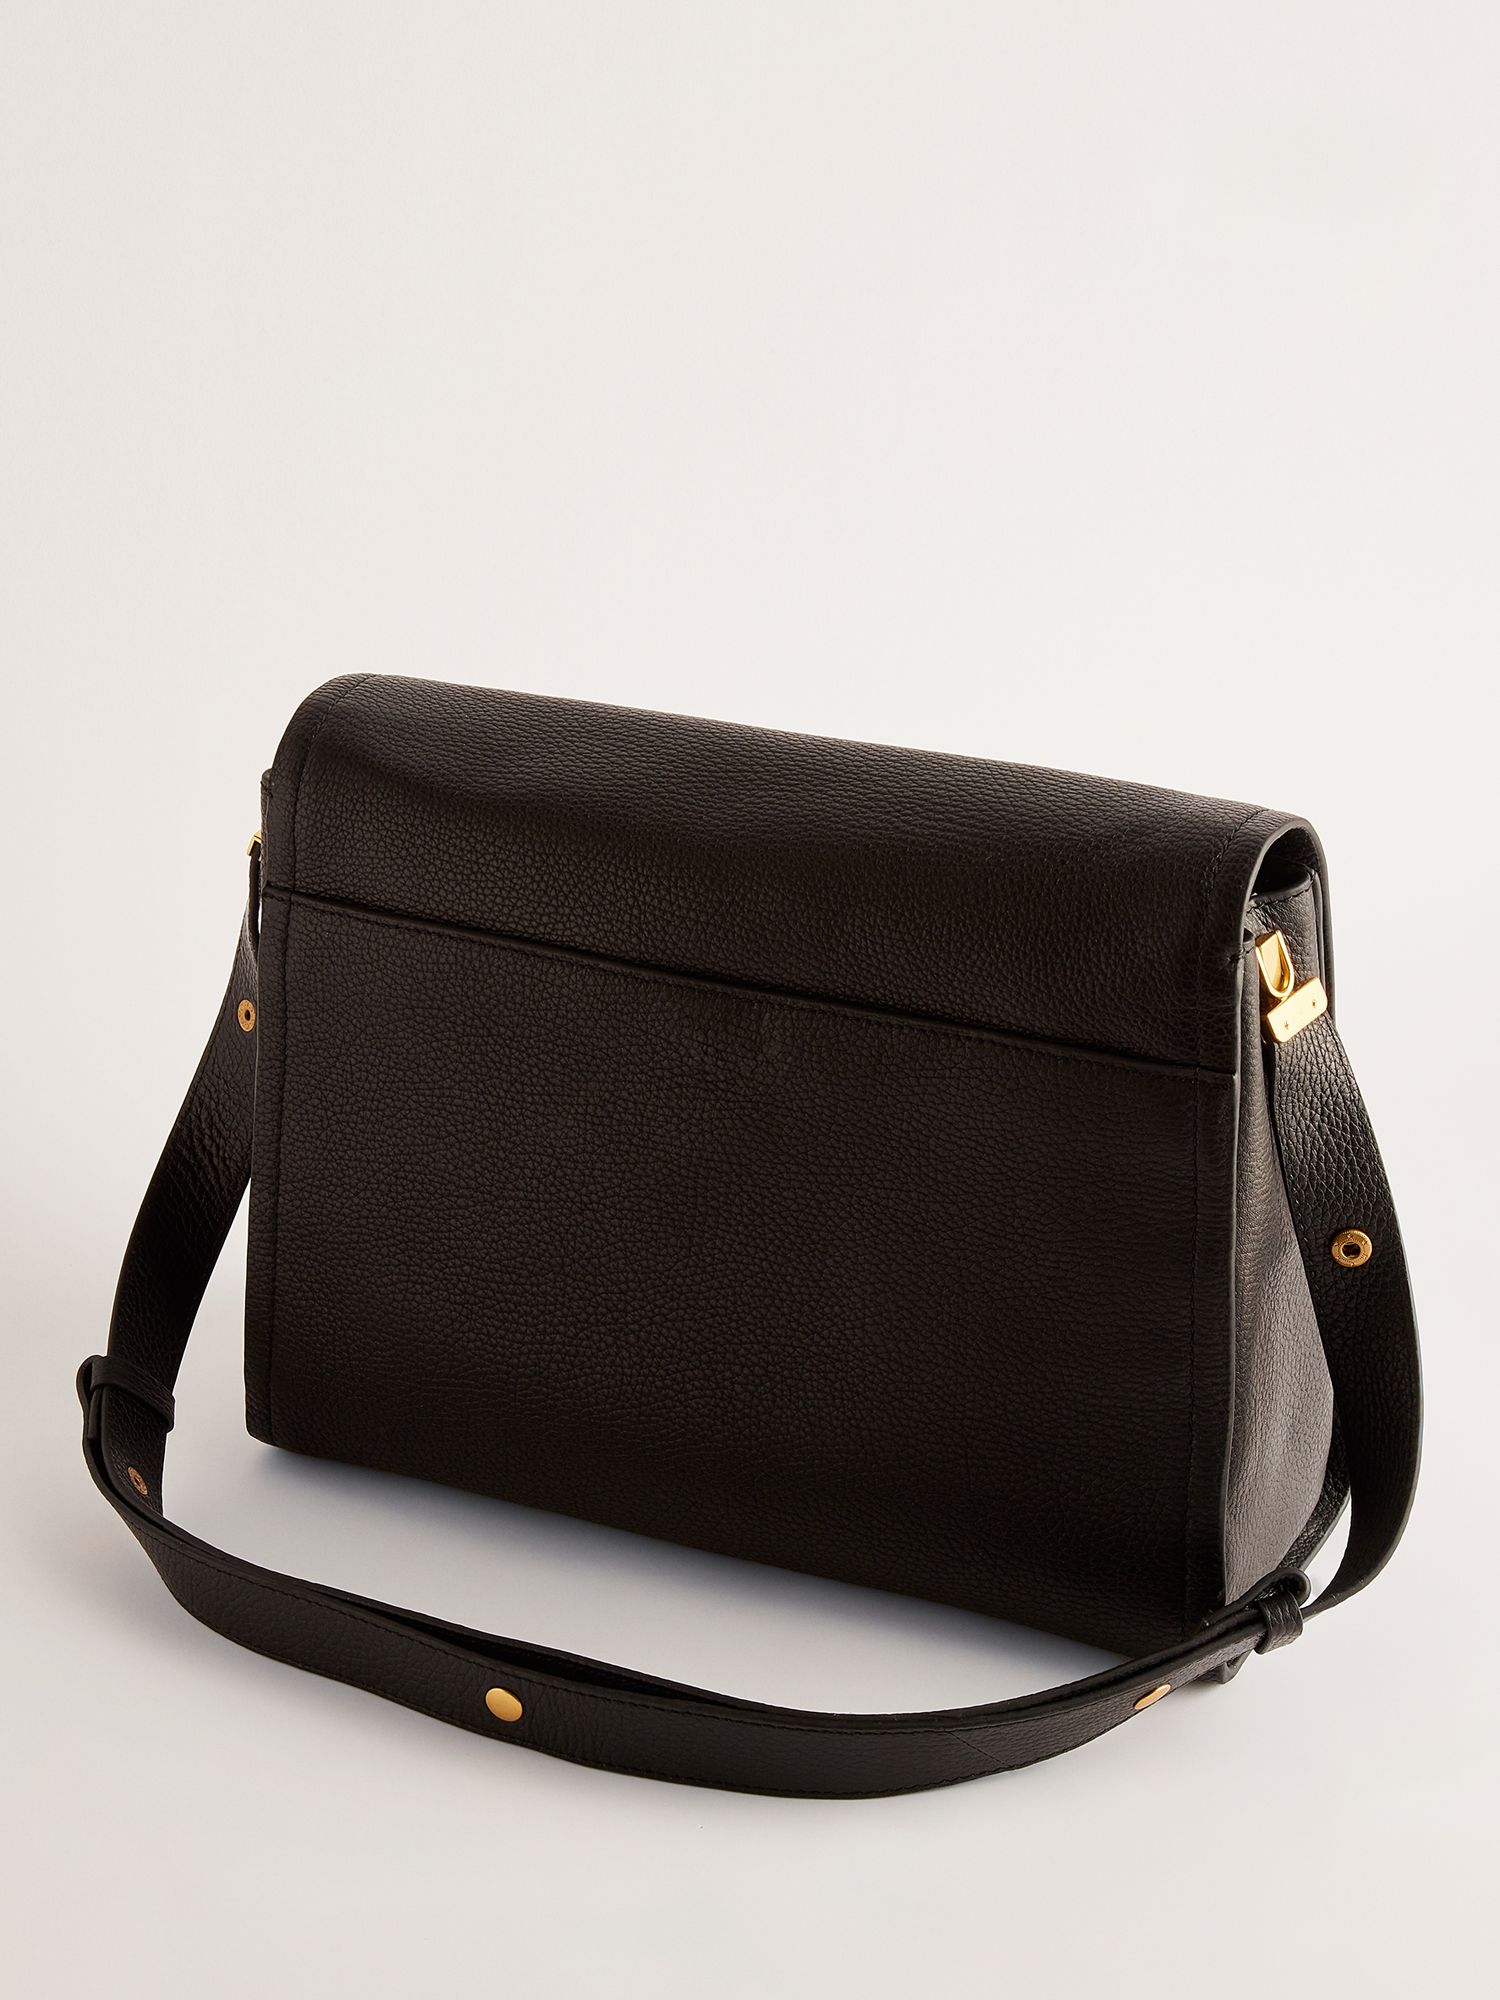 Ted Baker Imilily Lock Detail Large Leather Shoulder Bag, Black, One Size